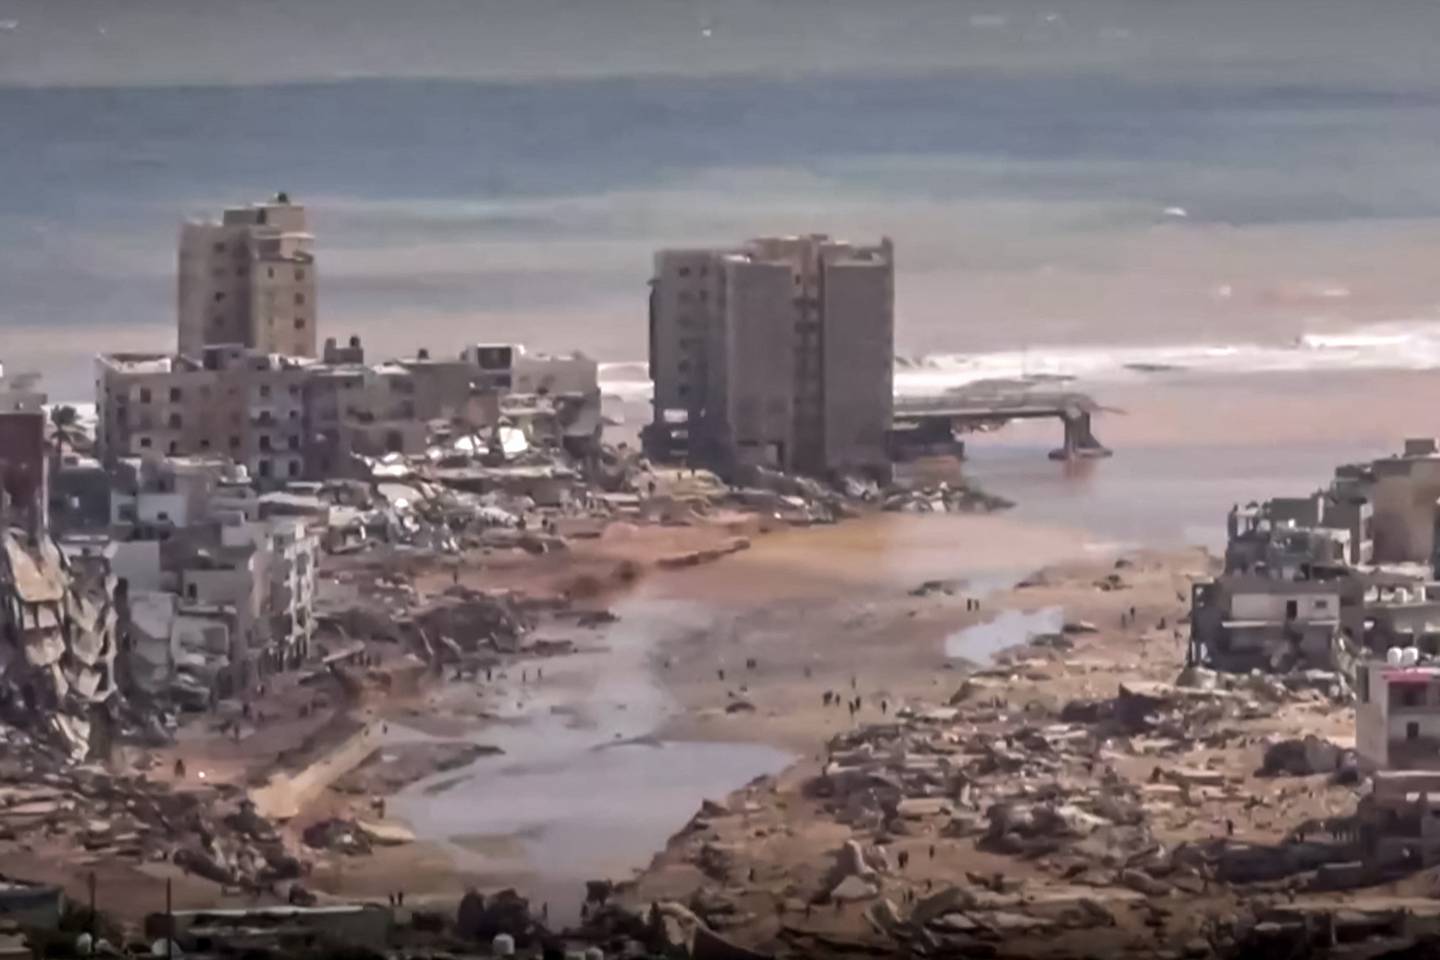 Esta imagen extraída de imágenes publicadas en las redes sociales por el canal de televisión libio al-Masar el 13 de septiembre muestra una vista aérea de los grandes daños causados ​​por las inundaciones después de que la tormenta mediterránea "Daniel" azotara la ciudad de Derna